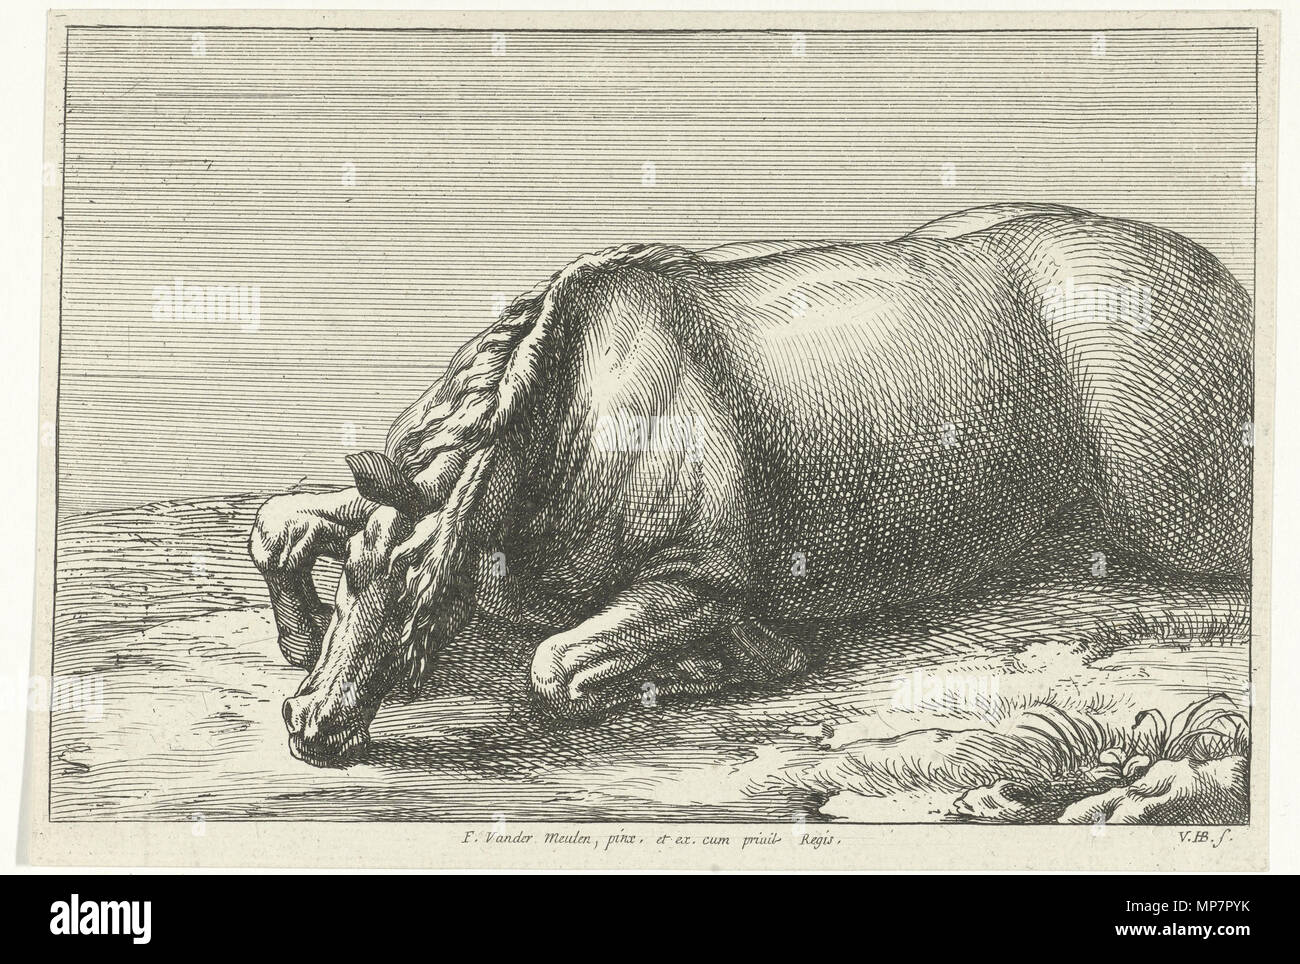 Englisch: getötet Pferd von der linken Seite zwischen 1674 und 1733 gesehen. 704 Jan van Huchtenburg, Adam Frans van der Meulen - getötete Pferd von der linken Seite aus gesehen Stockfoto